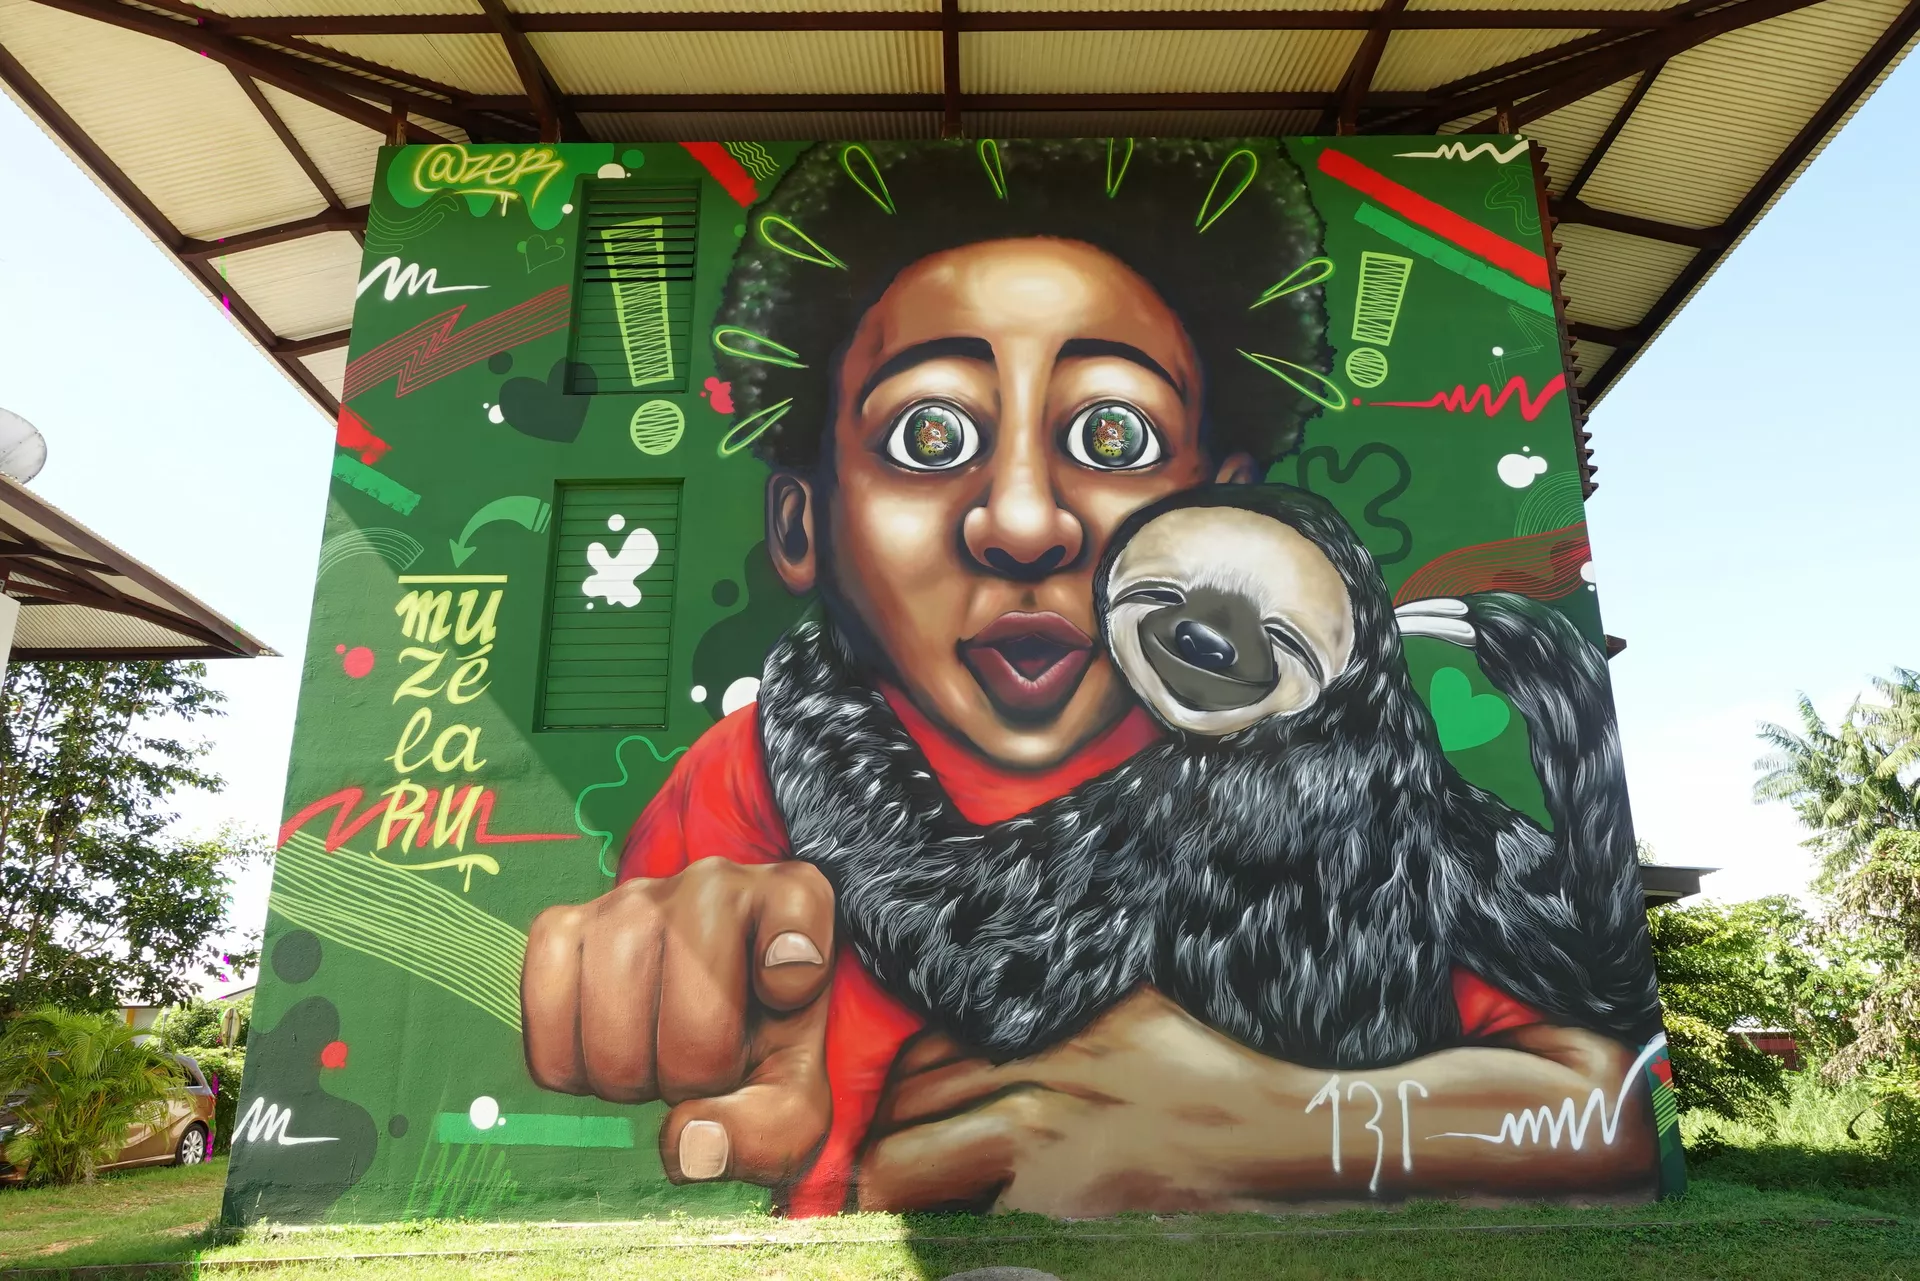 Oeuvre de Street Art réalisée par Azer à Macouria